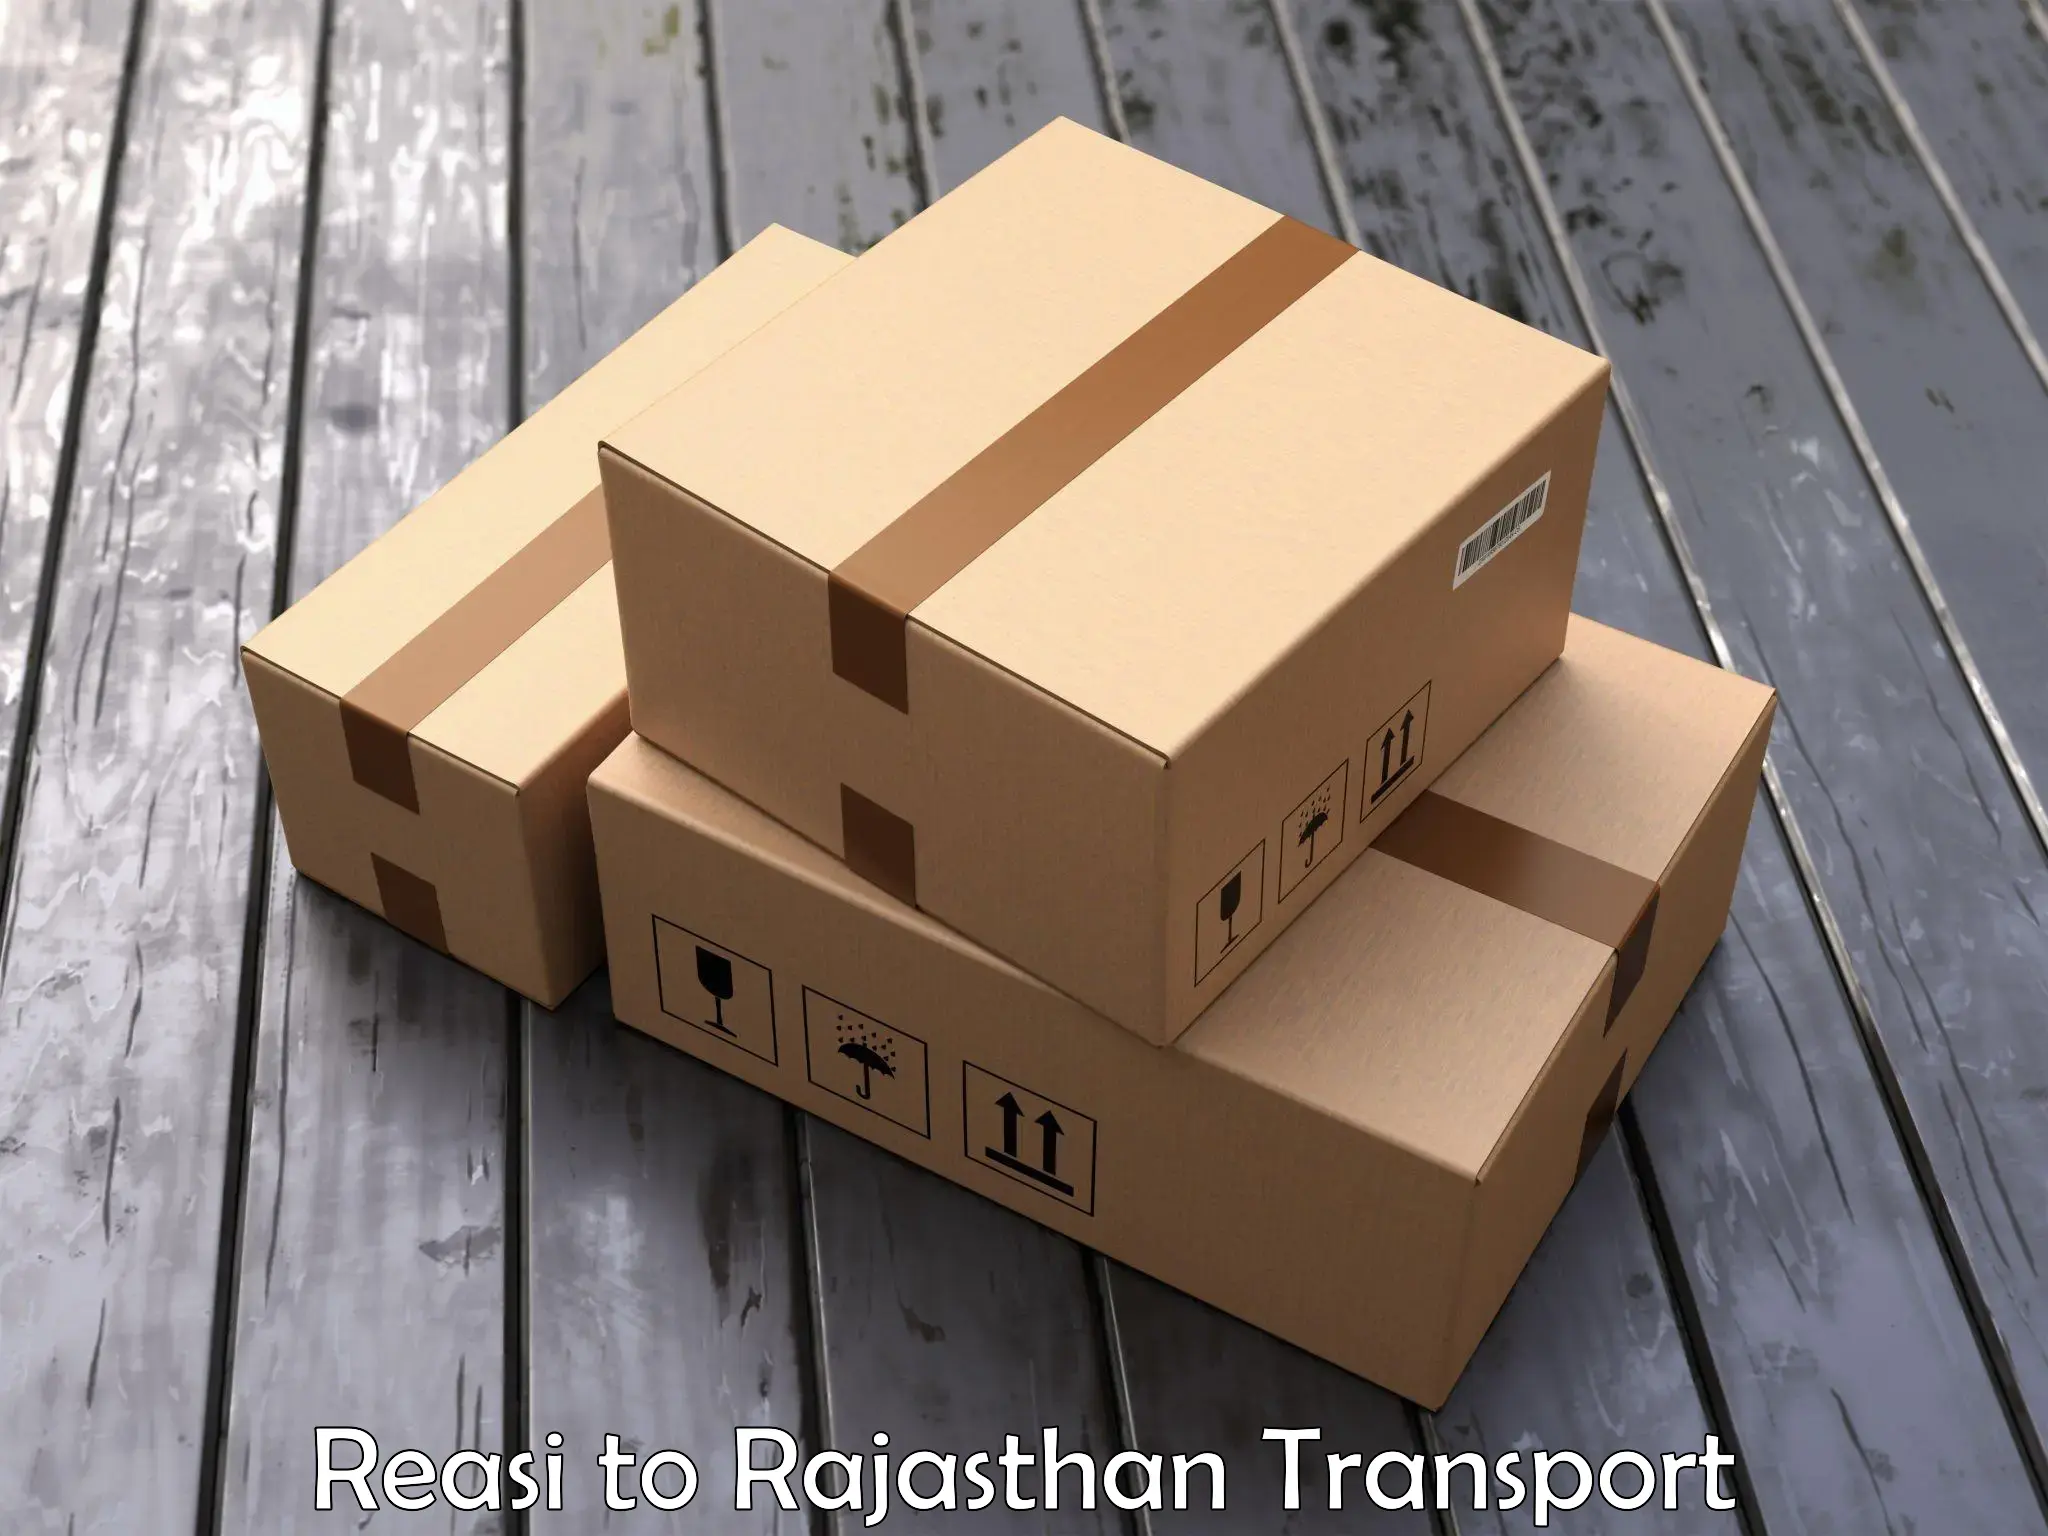 Lorry transport service Reasi to Sangaria